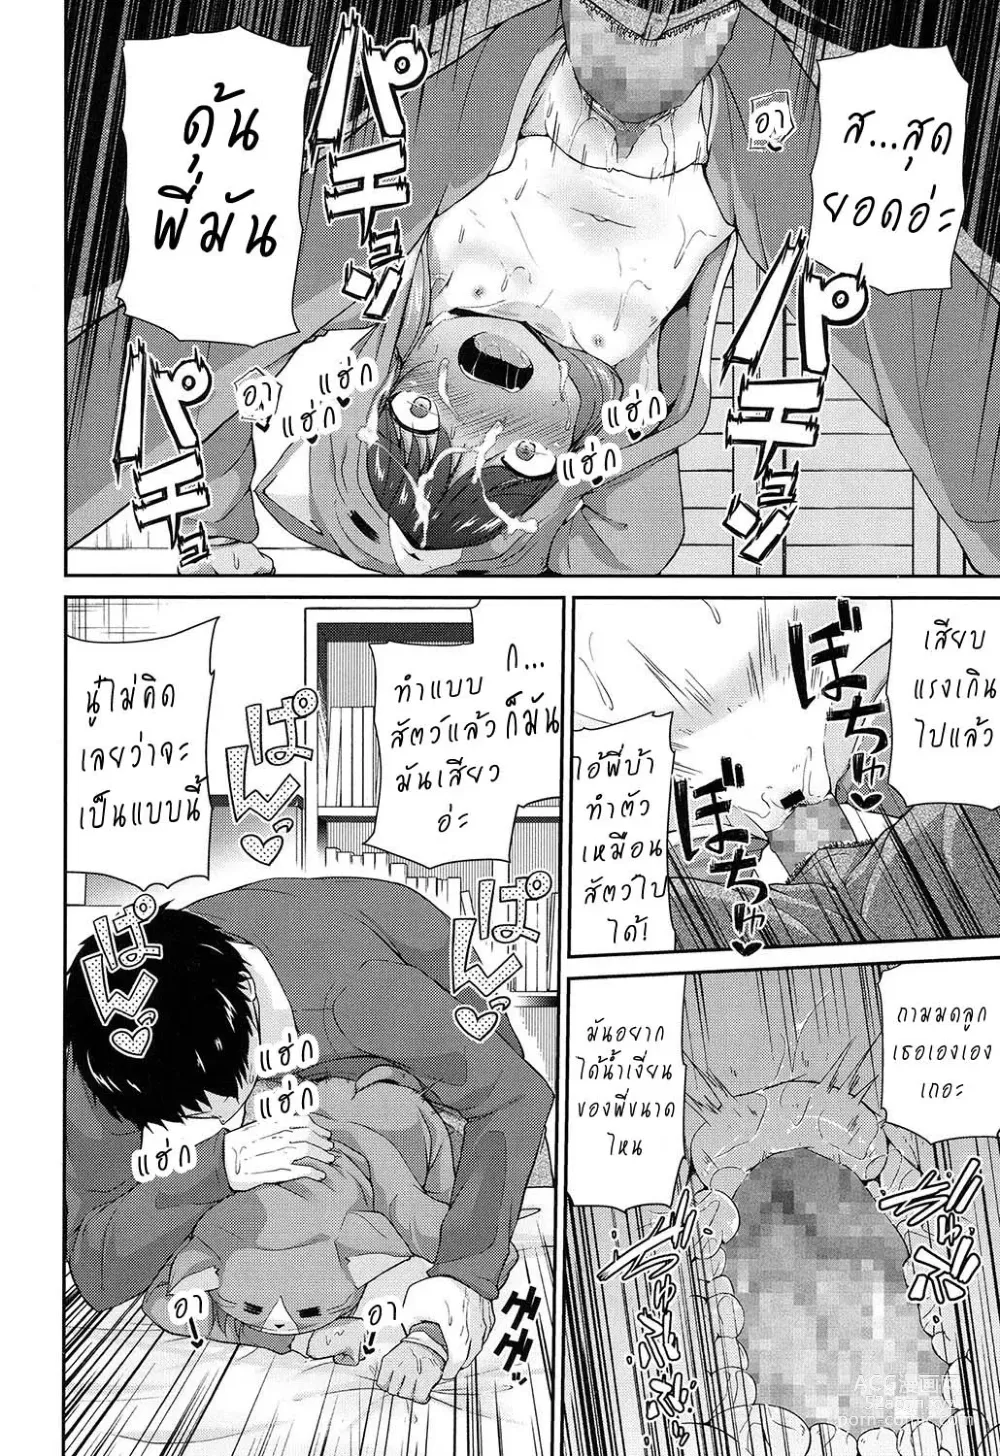 Page 14 of manga Waga Uchi no Neko Jijou